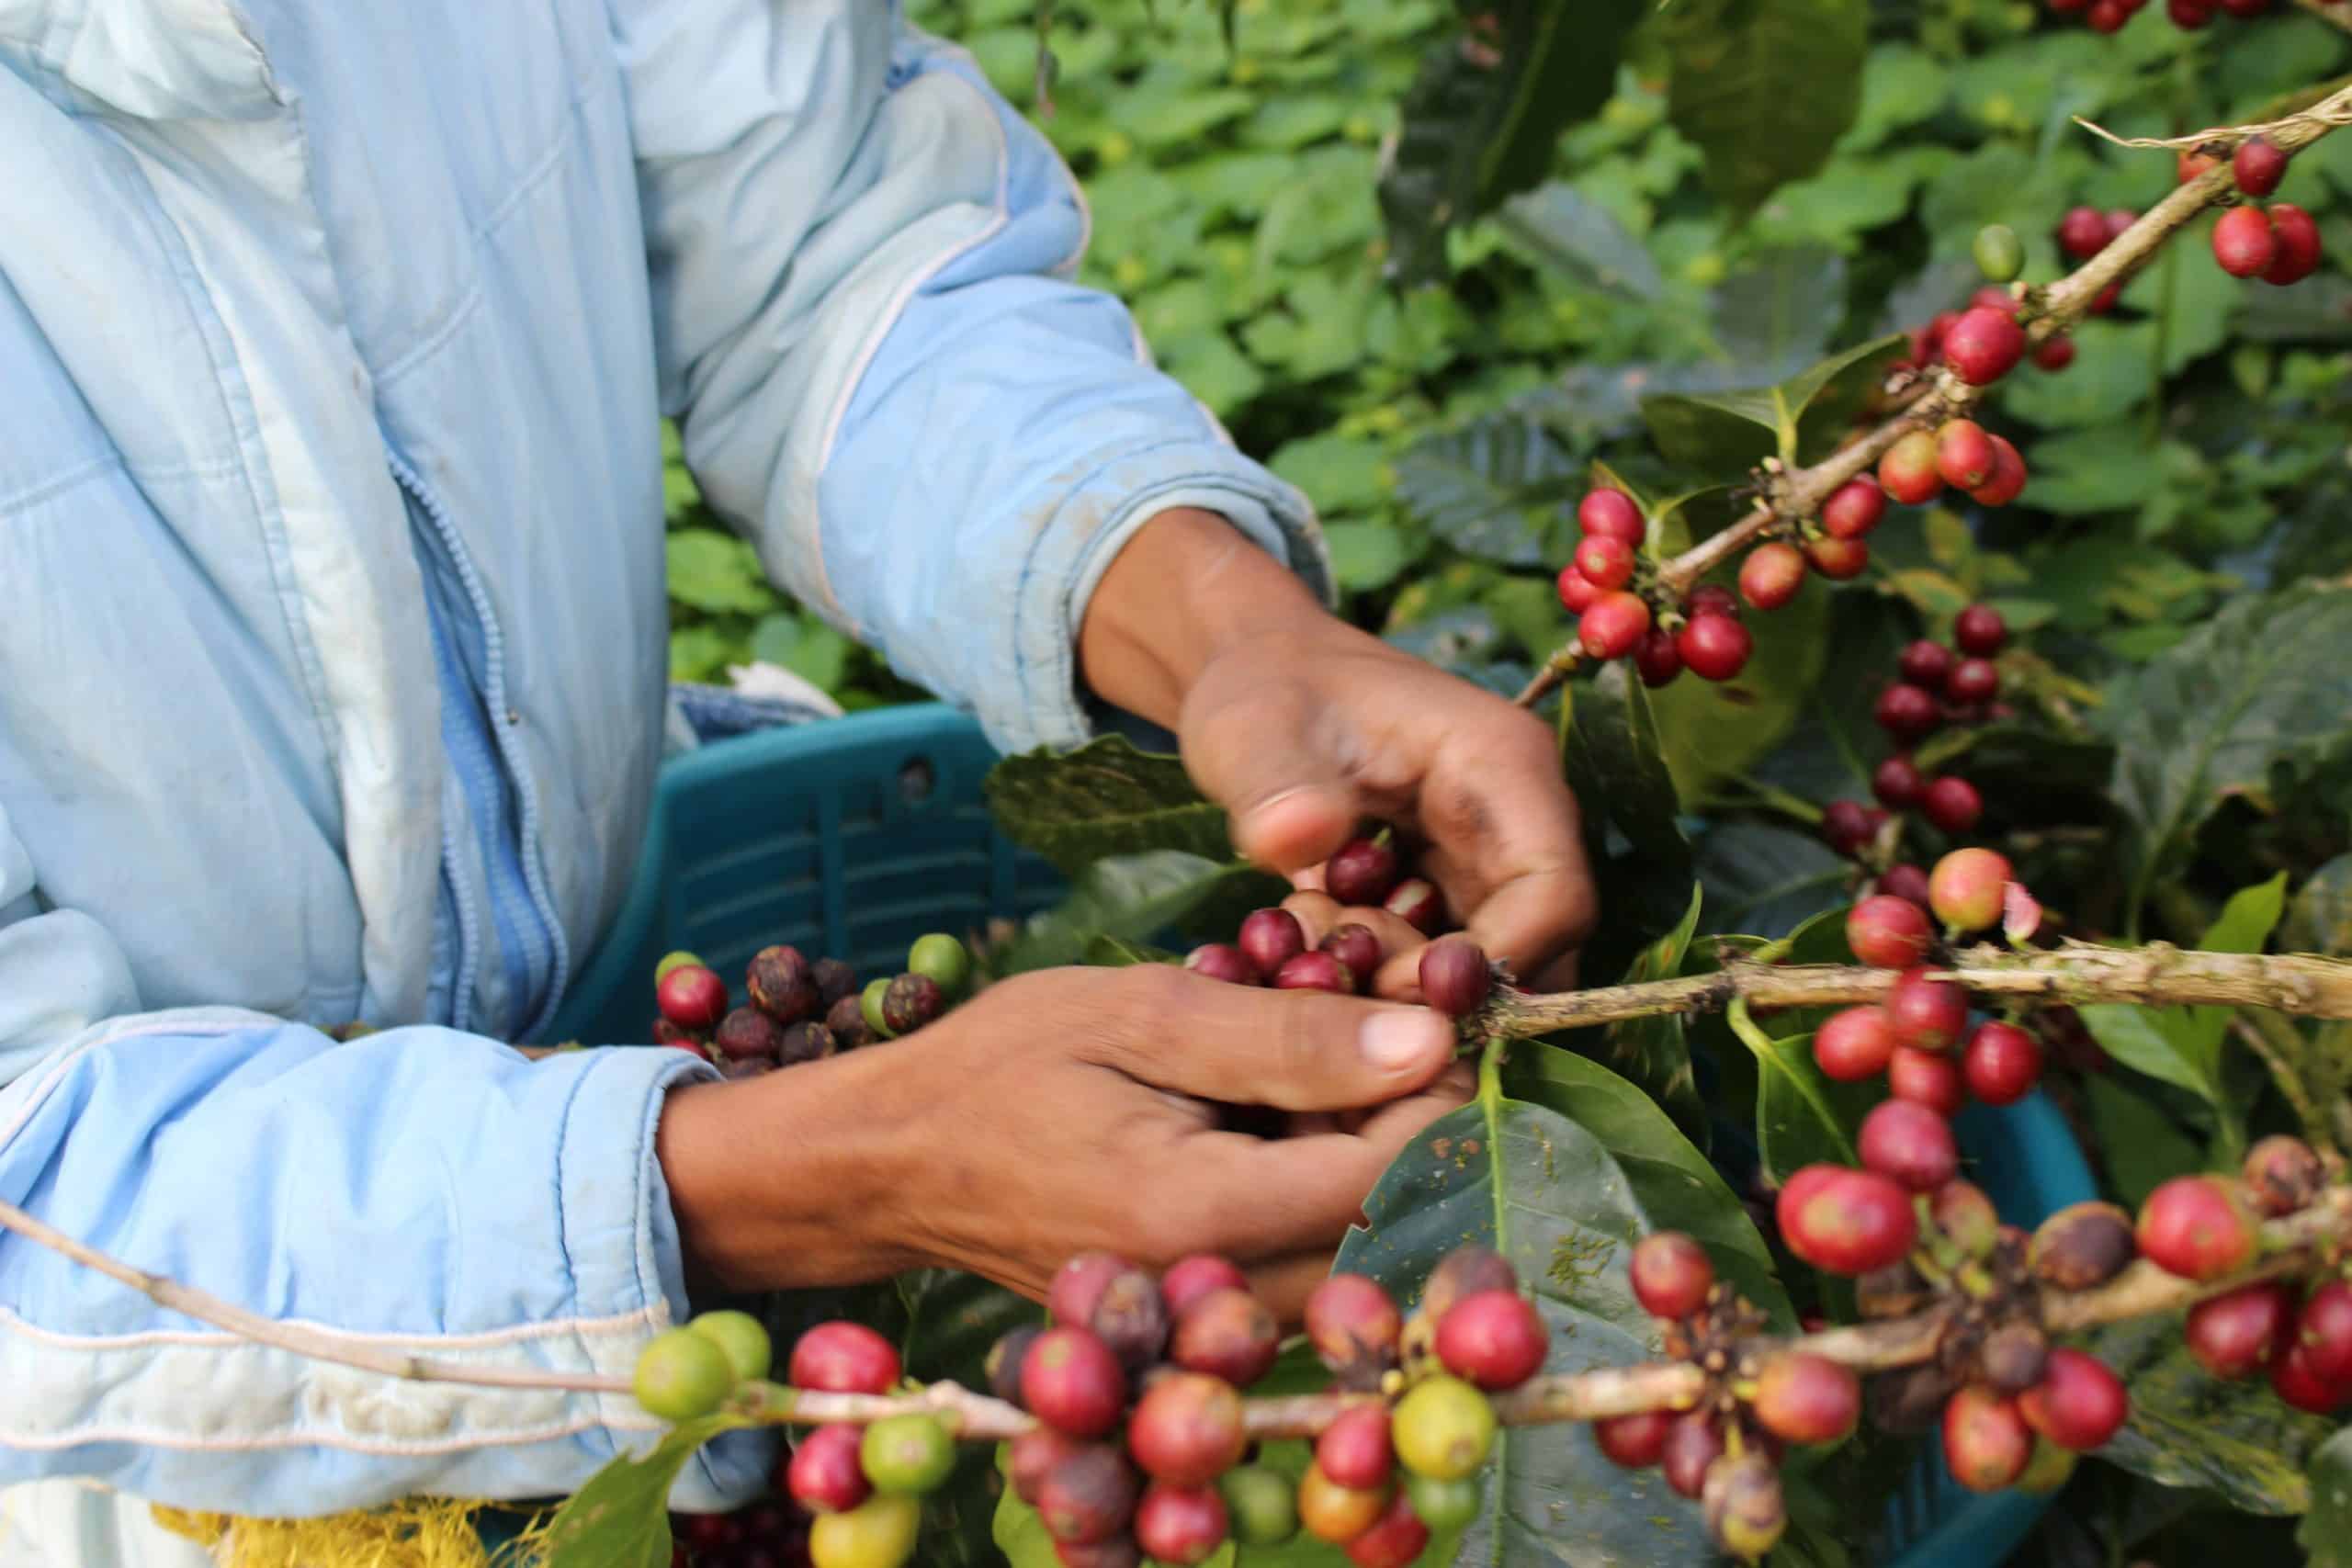 A coffee farmer picking fresh coffee beans.